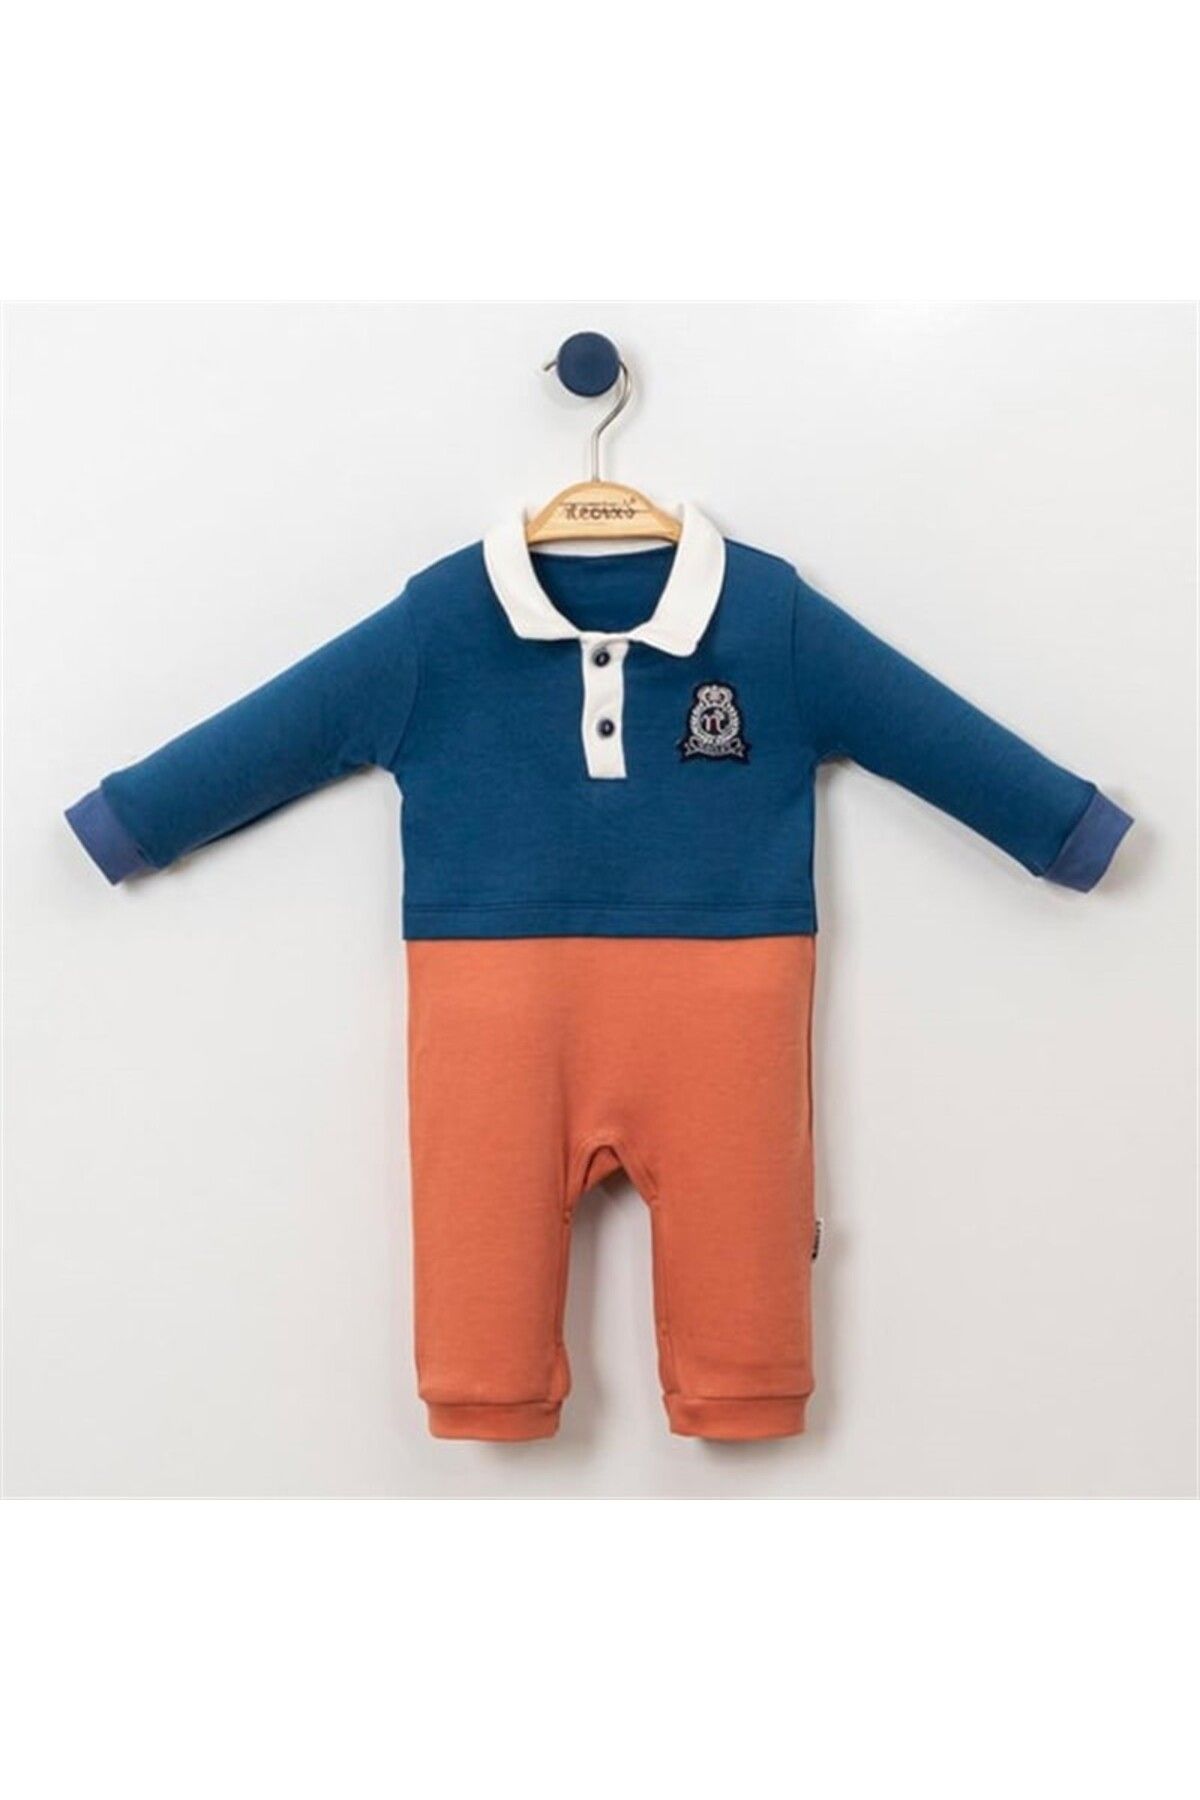 Necix's DİGİDİ KIDS Armalı Süveter Görünümlü Polo Yaka Mavi-Kiremit Erkek Bebek Tulum 3-12 ay